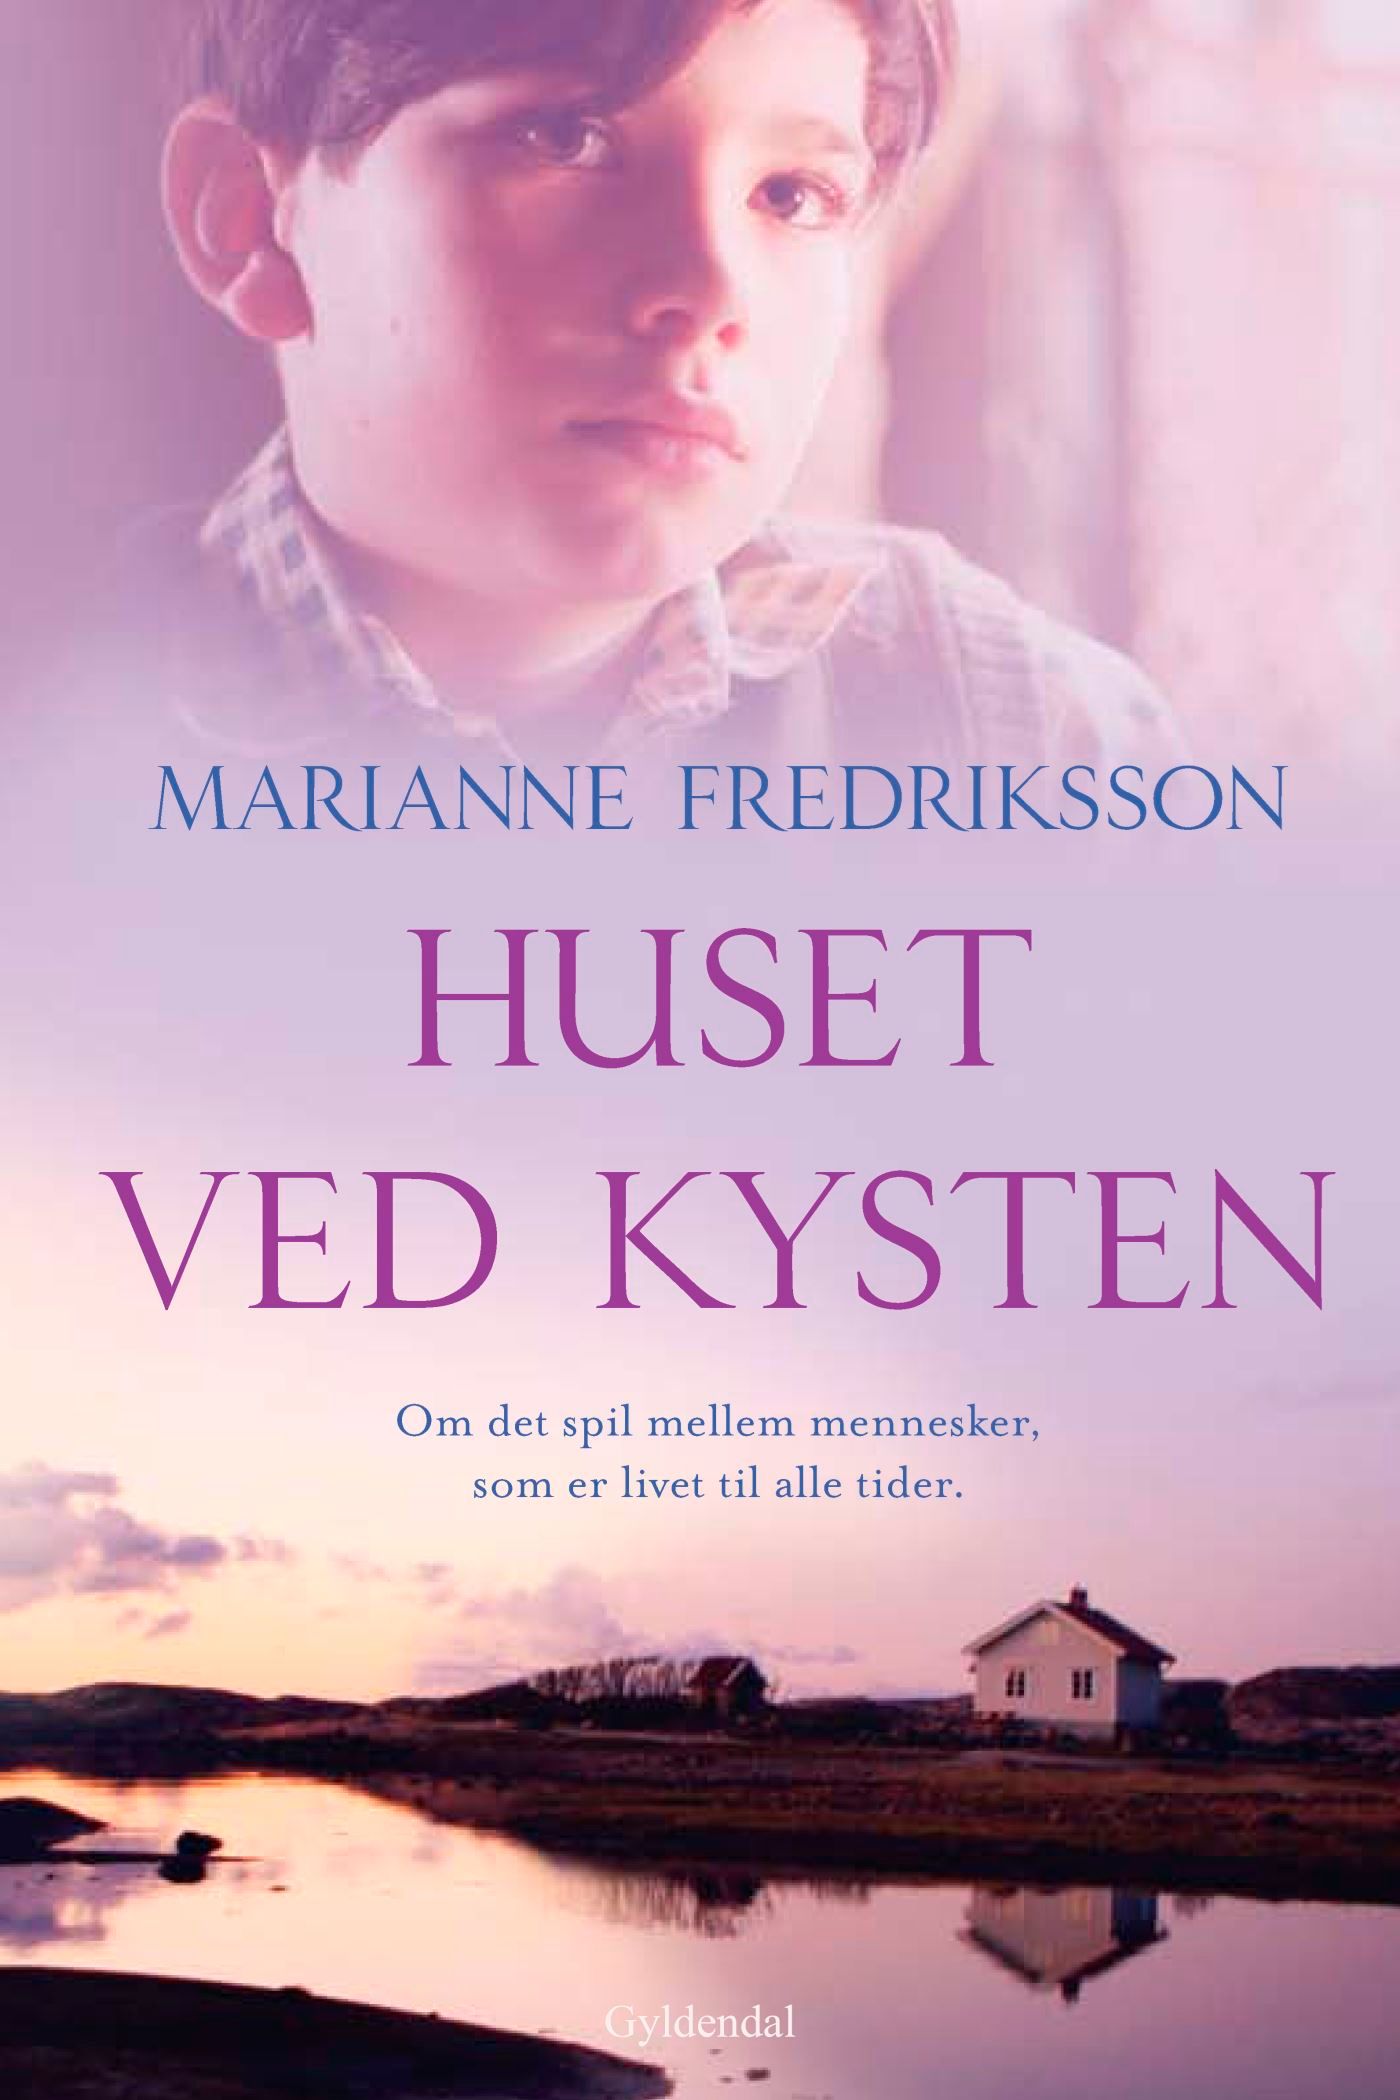 Huset ved kysten, e-bog af Marianne Fredriksson